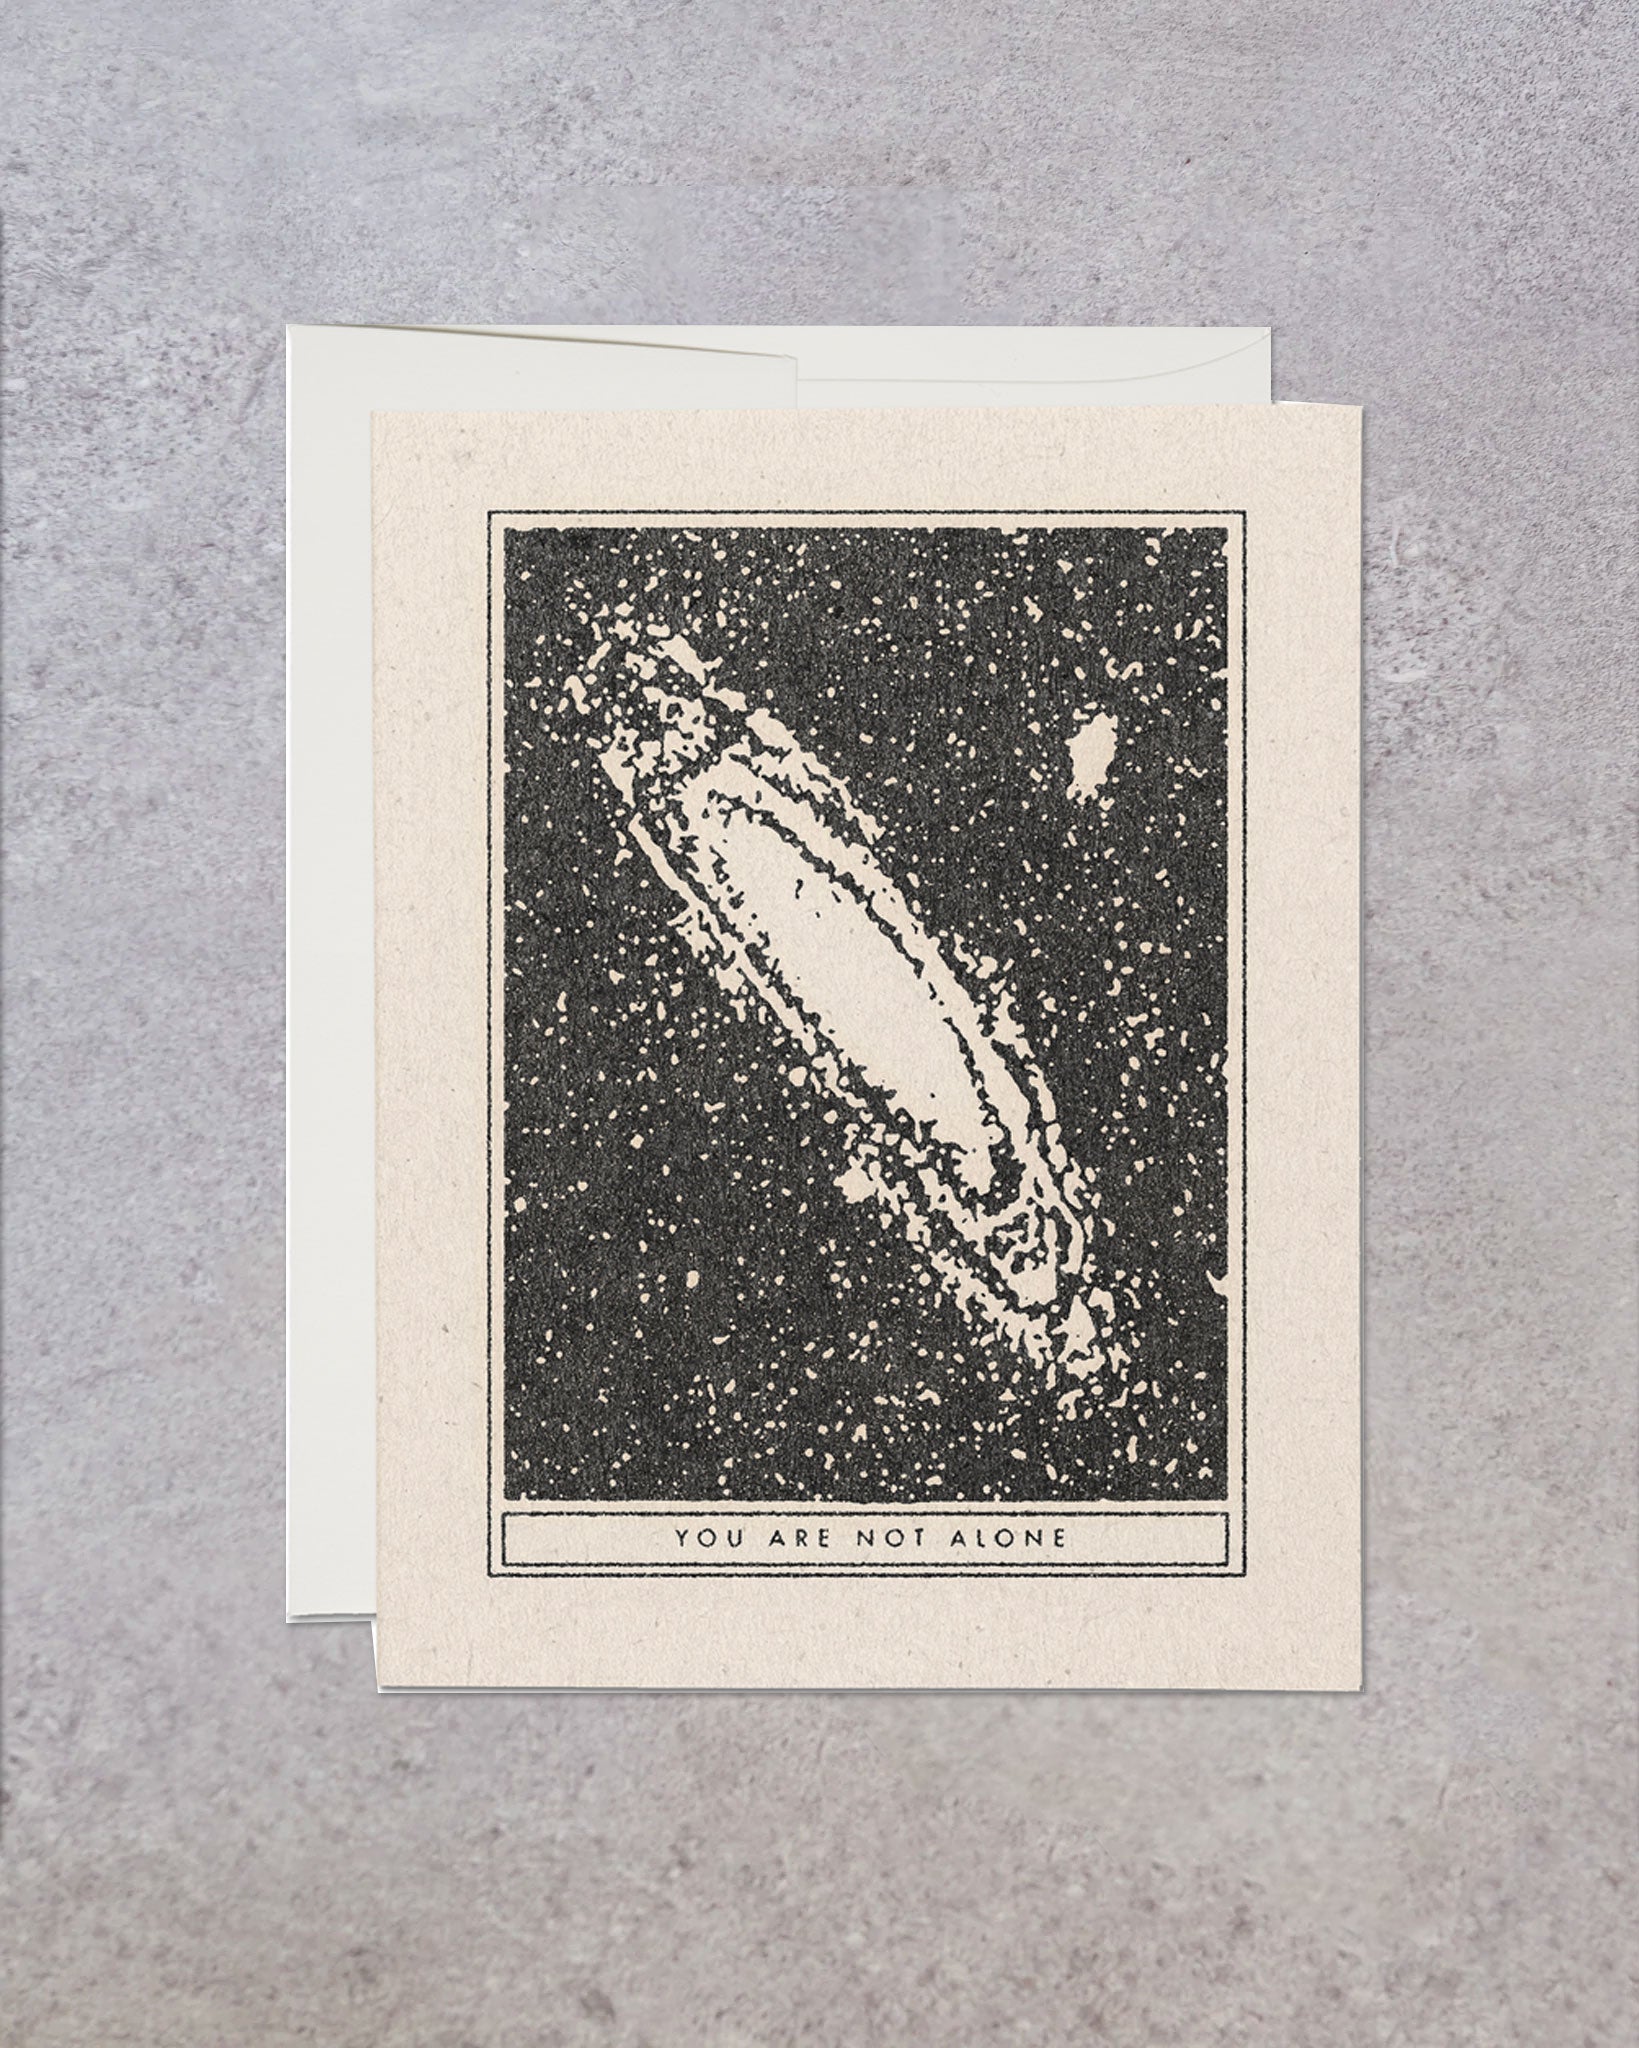 Interstellar Greeting Cards by Daren Thomas Magee